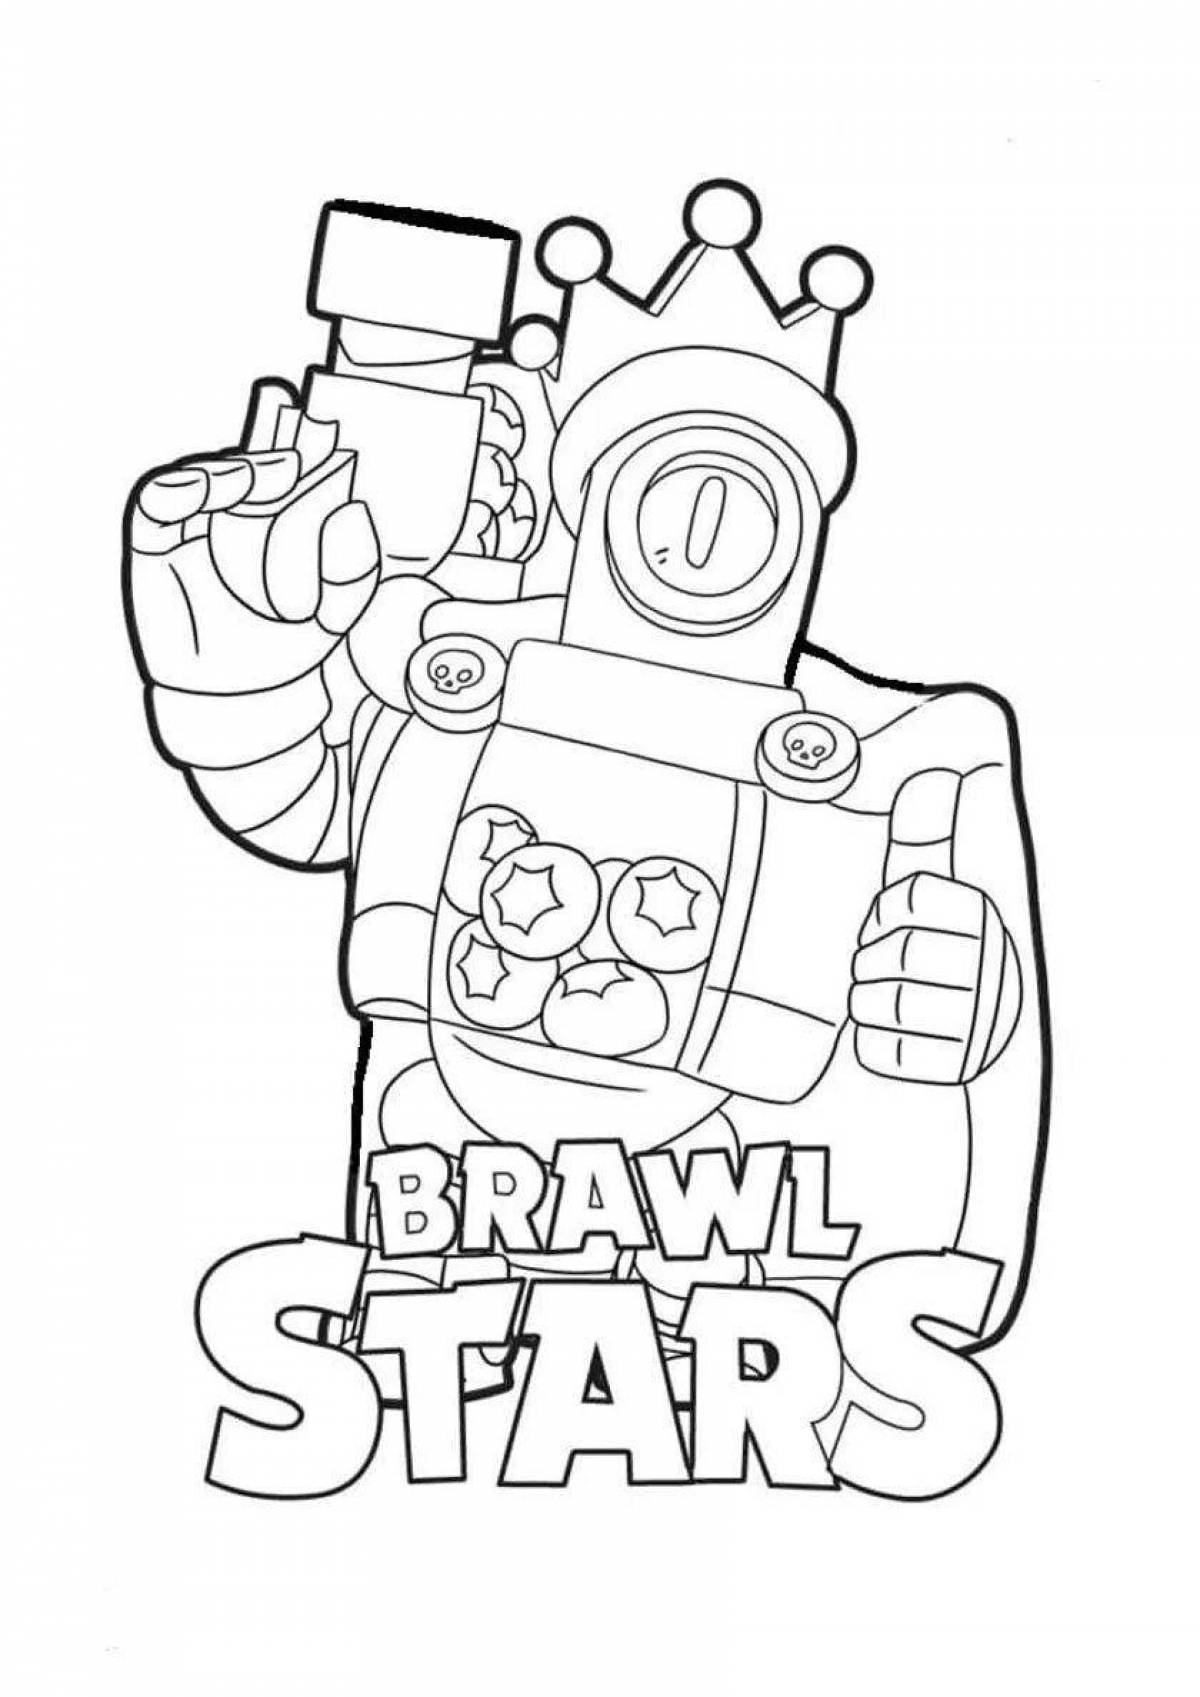 Brawl stars bright gray coloring book